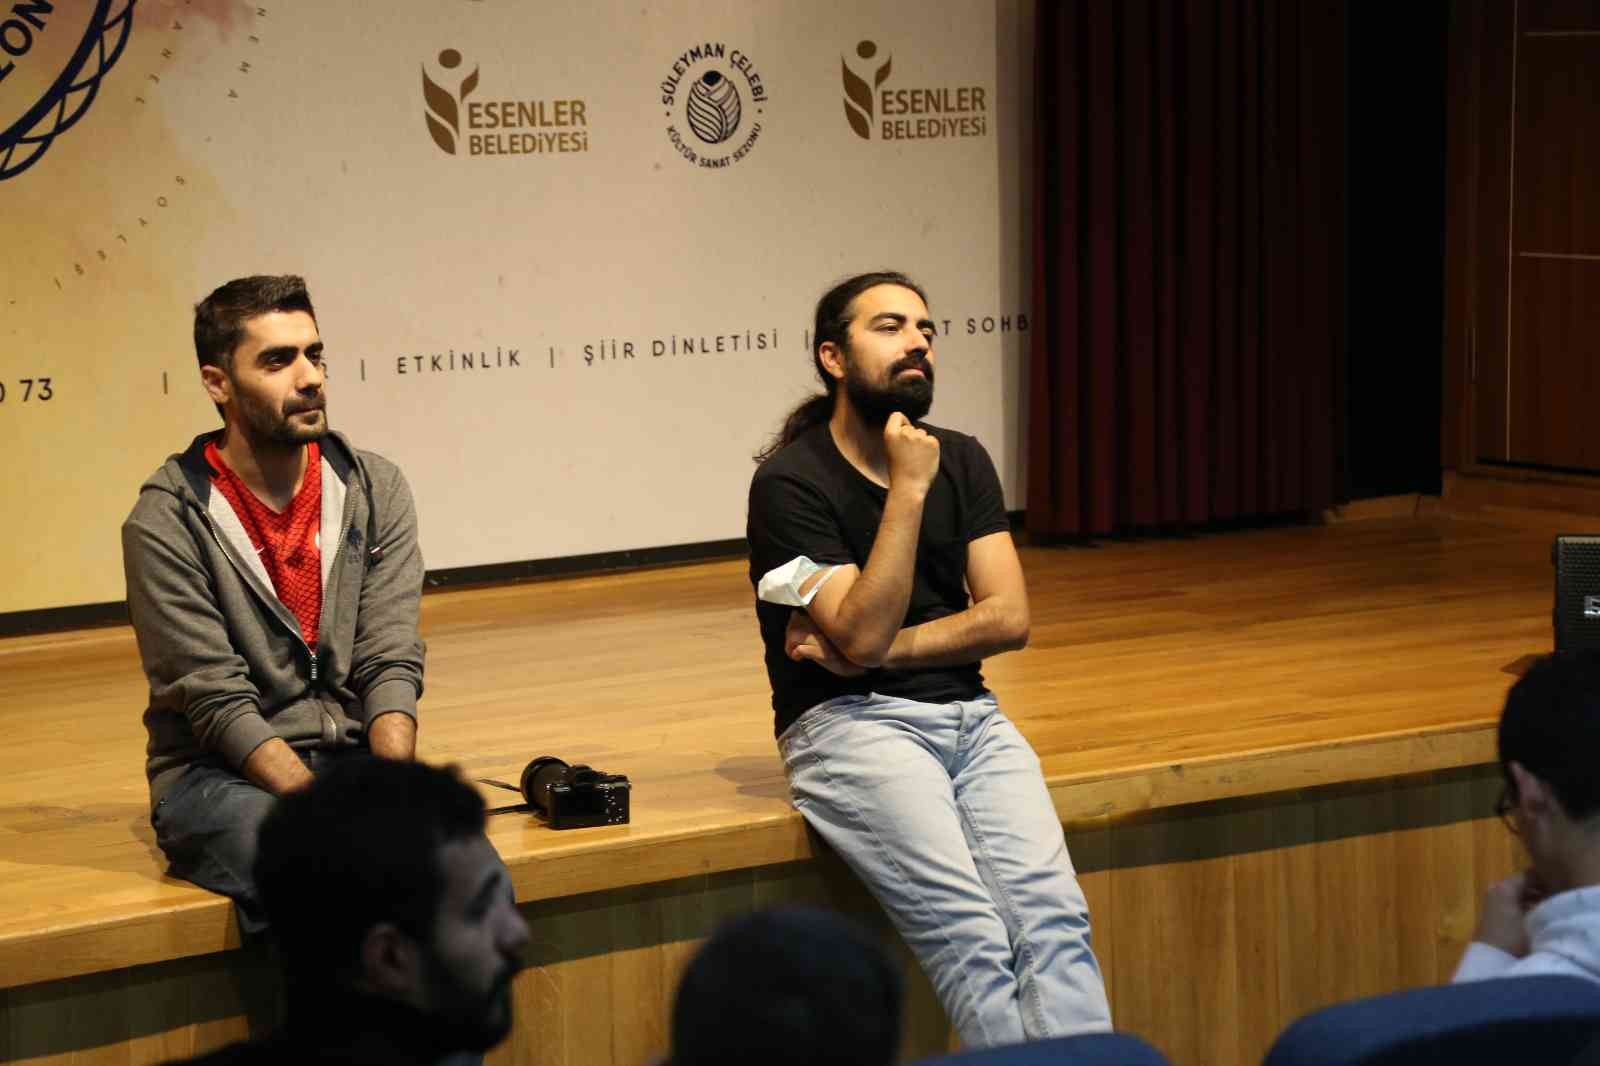 Esenler Sinema Akademisi’nde dersler başladı #istanbul